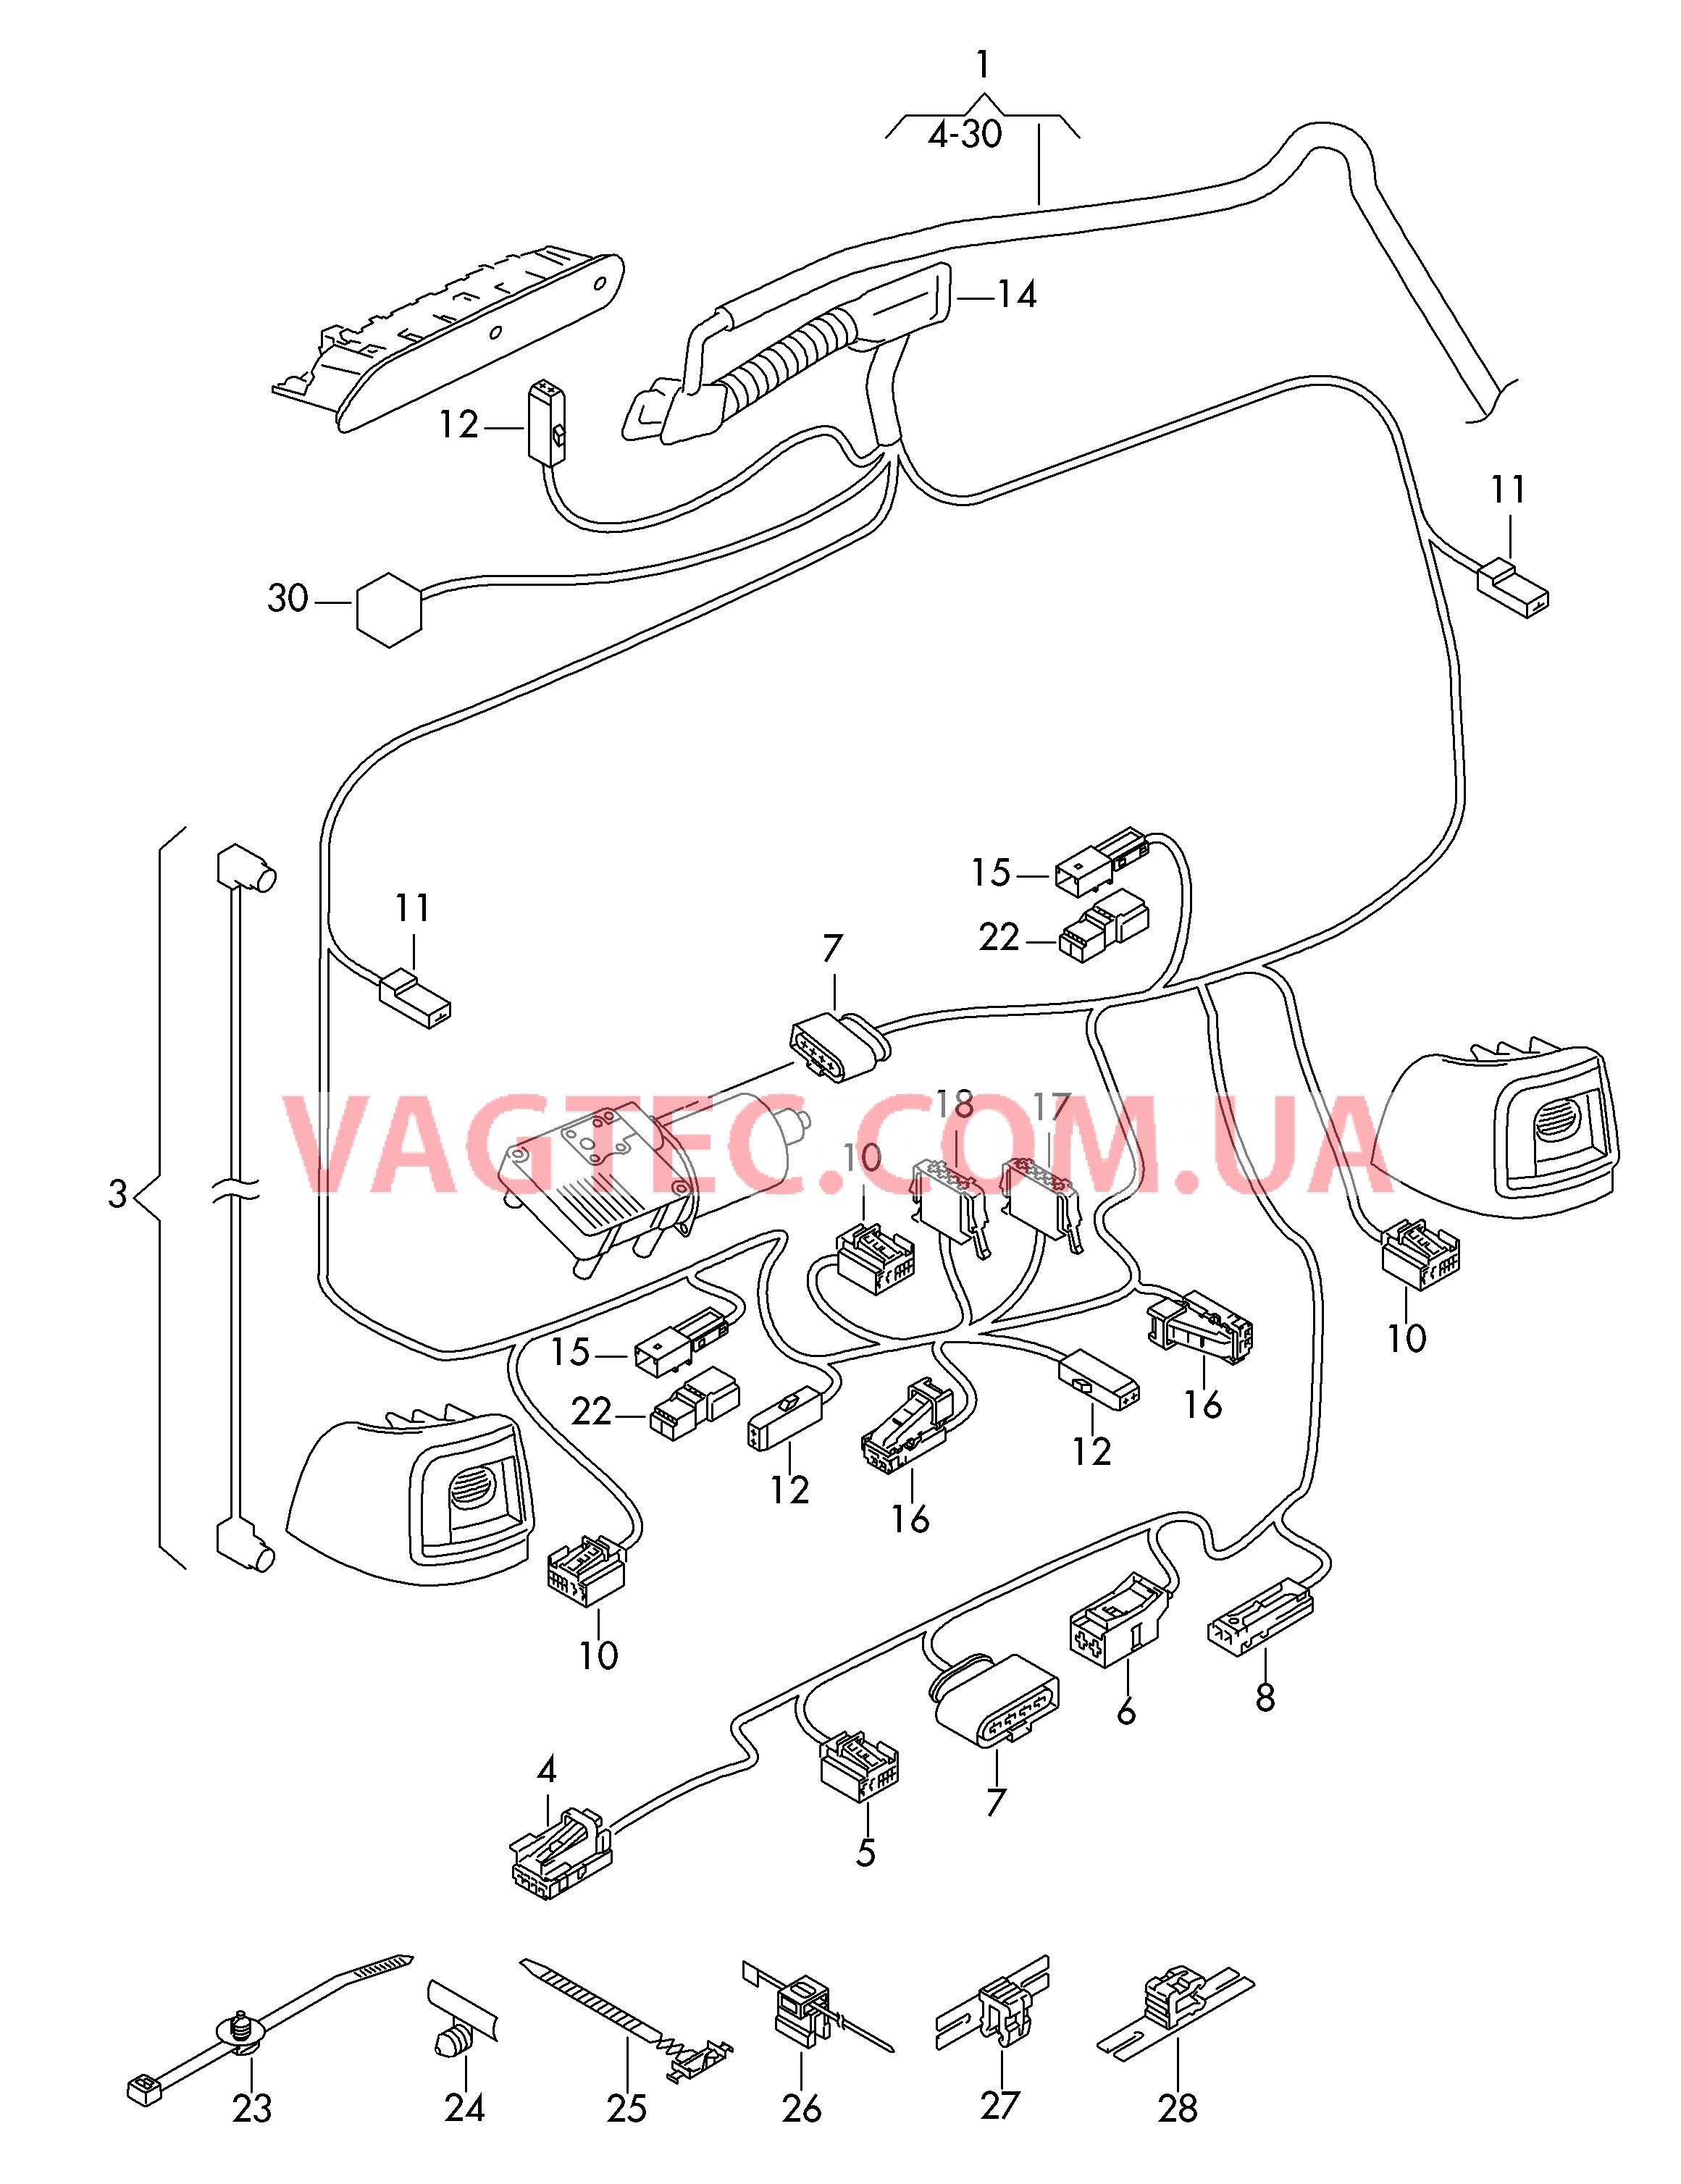 Отрезок жгута для крышки багажного отсека Cмотри руководство по ремонту Жгут проводов камеры  для SEAT Alhambra 2015